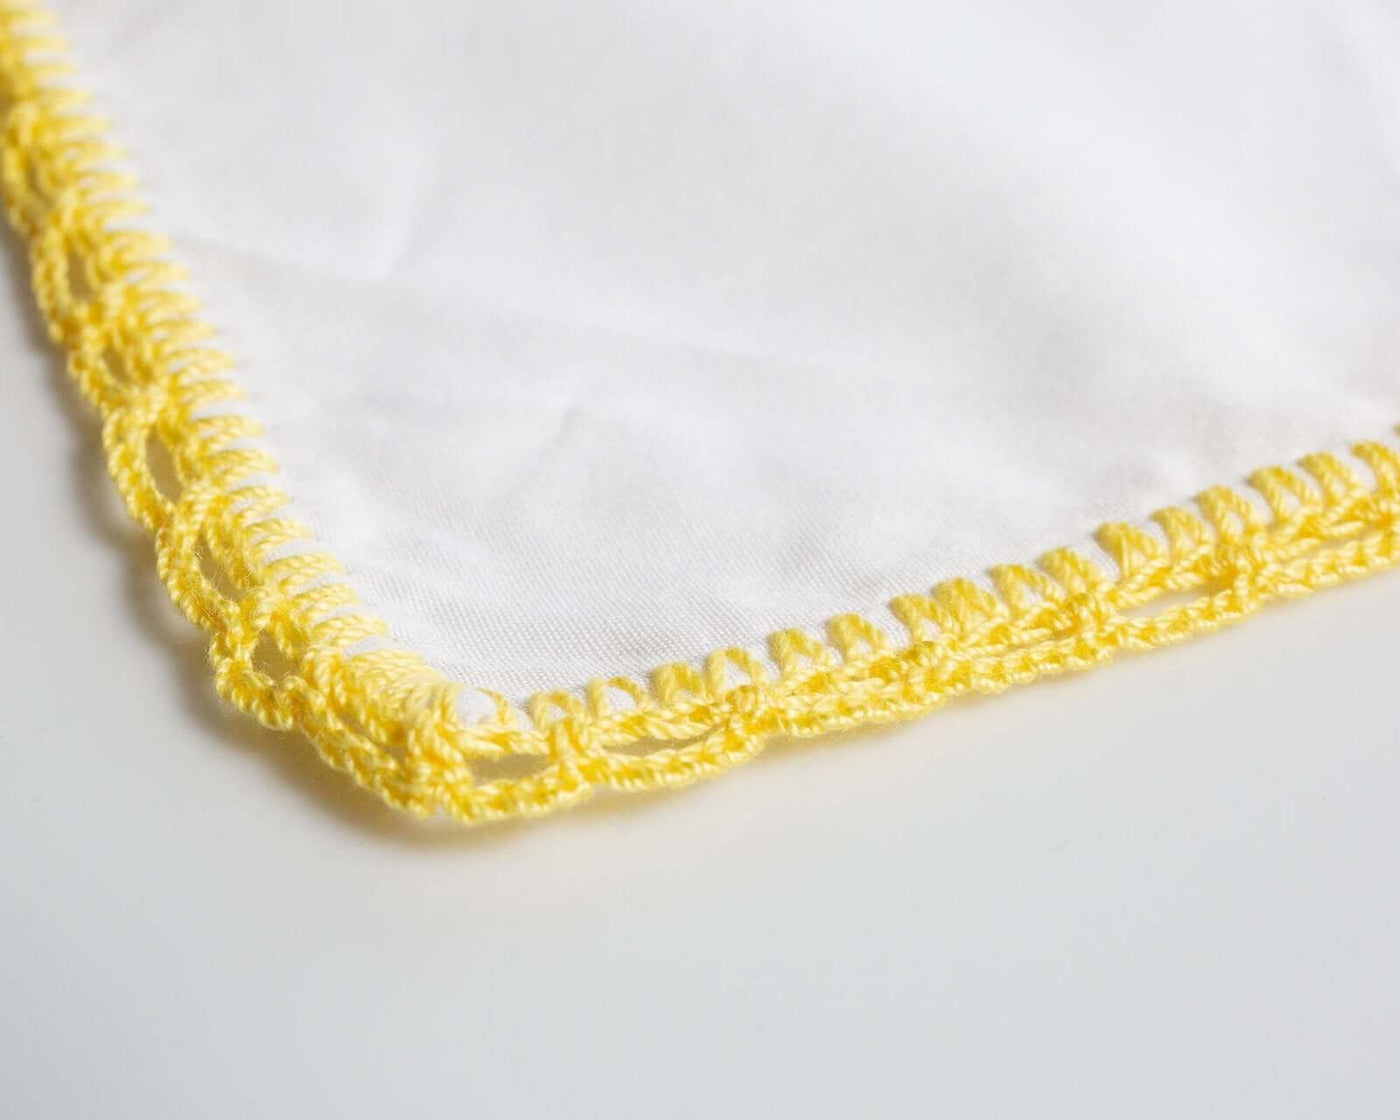 -Einstecktuch Crochet Yellow - Herr von Welt - Calabrese 1924